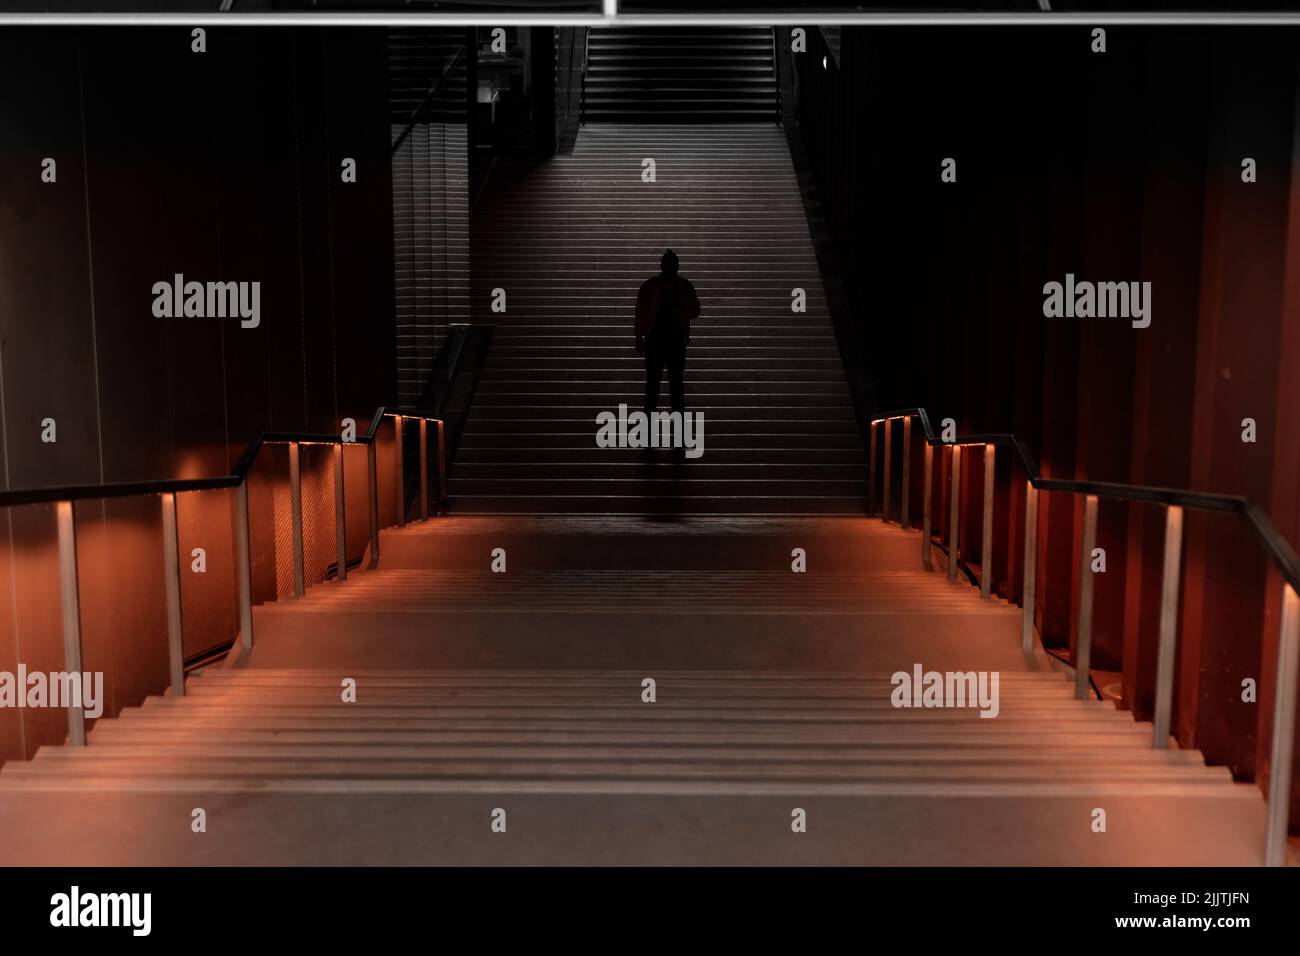 Eine Silhouette eines Mannes, der allein in der Mitte eines unterirdischen Tunnels zwischen den Treppen steht Stockfoto